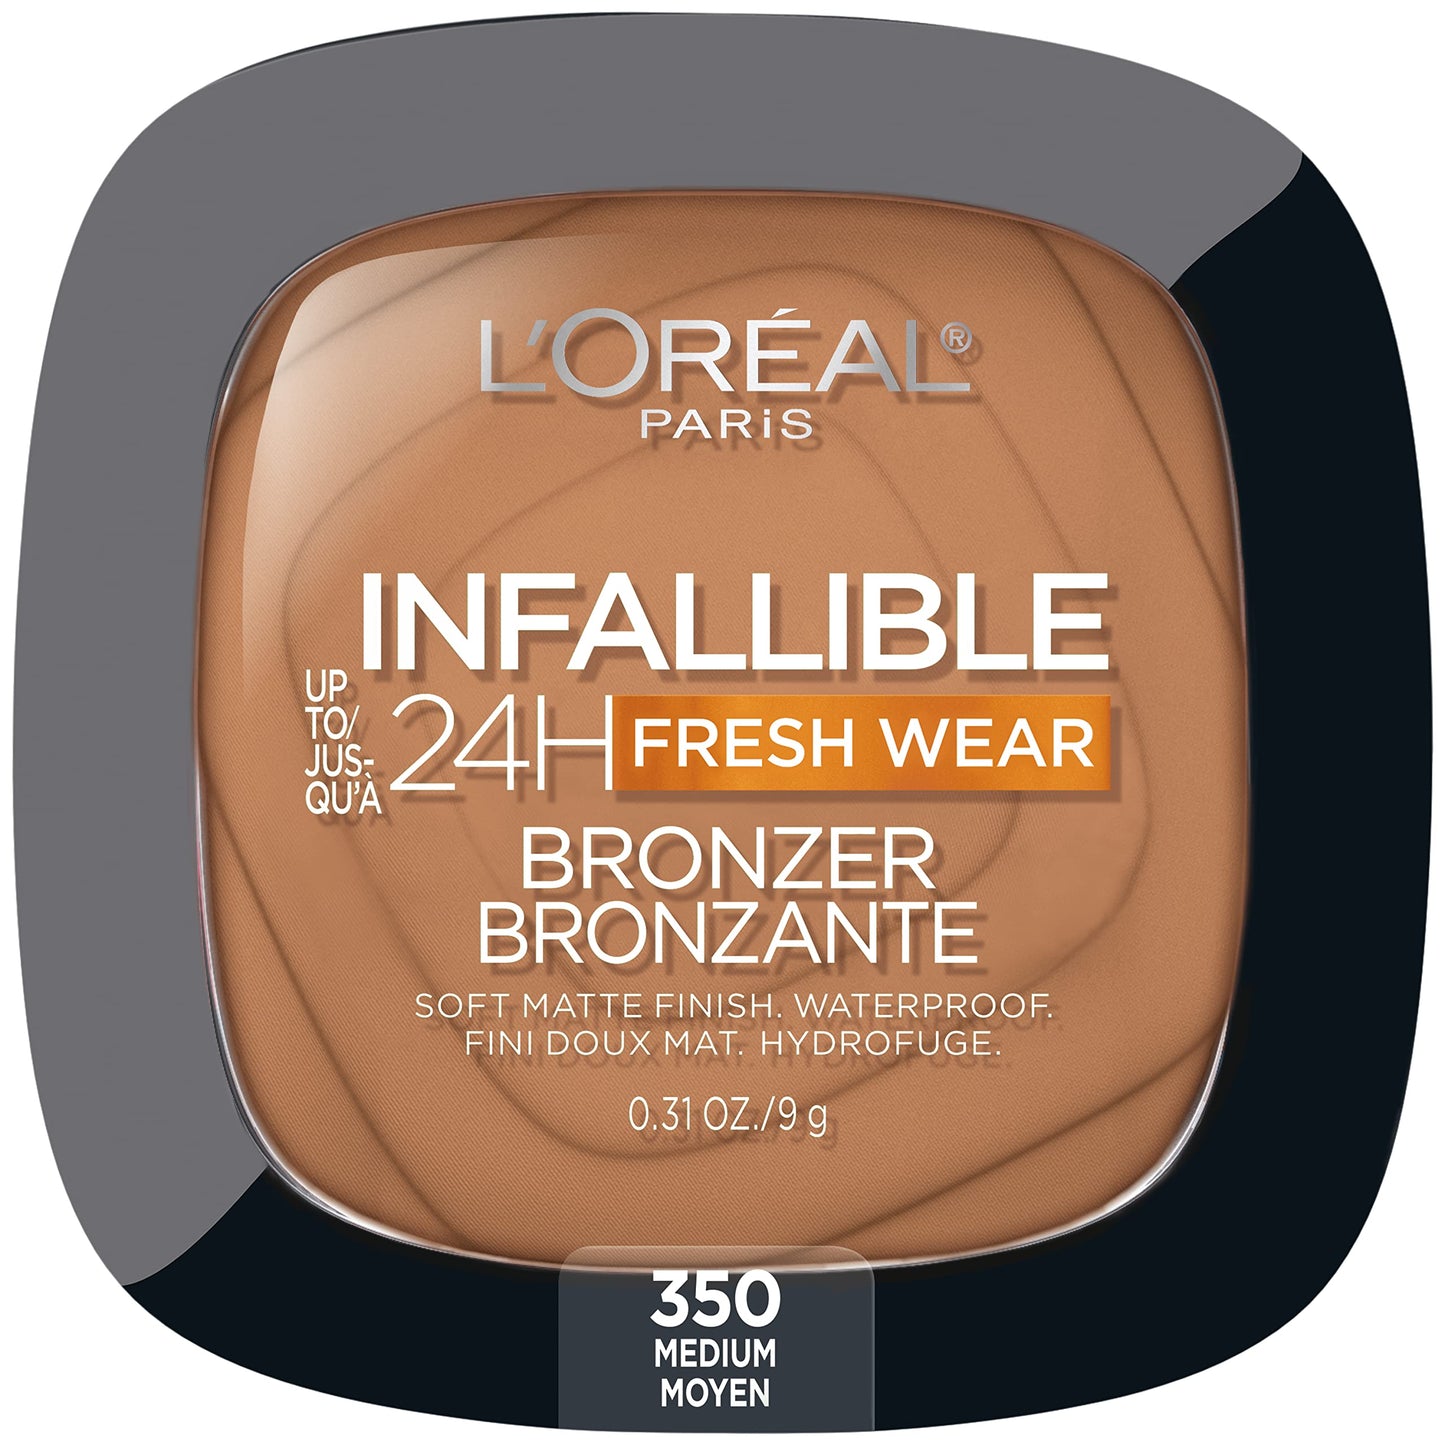 Infallible 24H Fresh Wear Bronzer